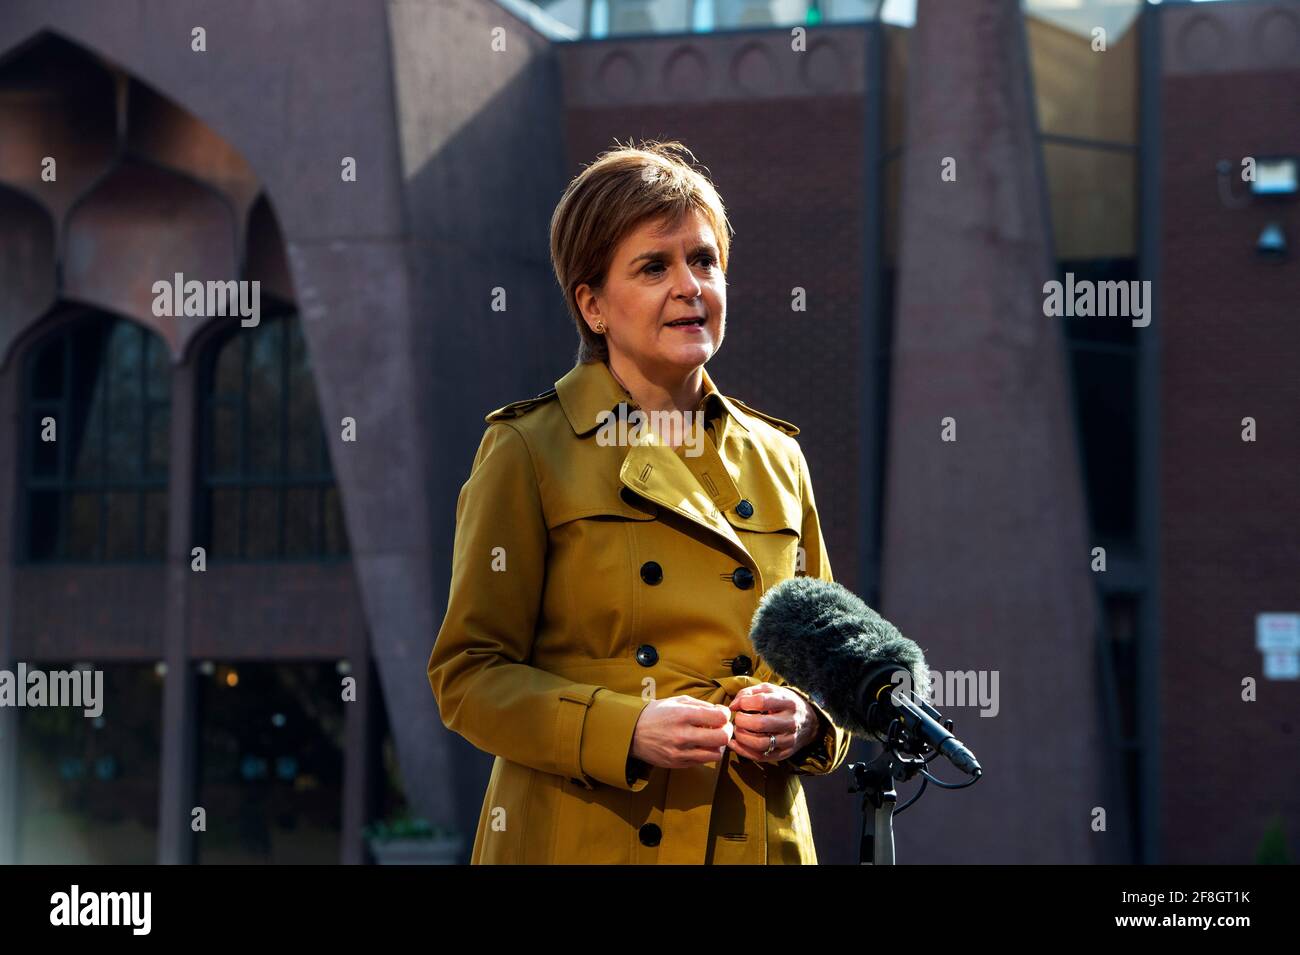 Die erste Ministerin und Vorsitzende der Scottish National Party (SNP), Nicola Sturgeon, spricht mit den Medien, nachdem sie die Glasgow Central Mosque während ihrer Wahlkampagne für die schottischen Parlamentswahlen besucht hatte. Bilddatum: Mittwoch, 14. April 2021. Stockfoto